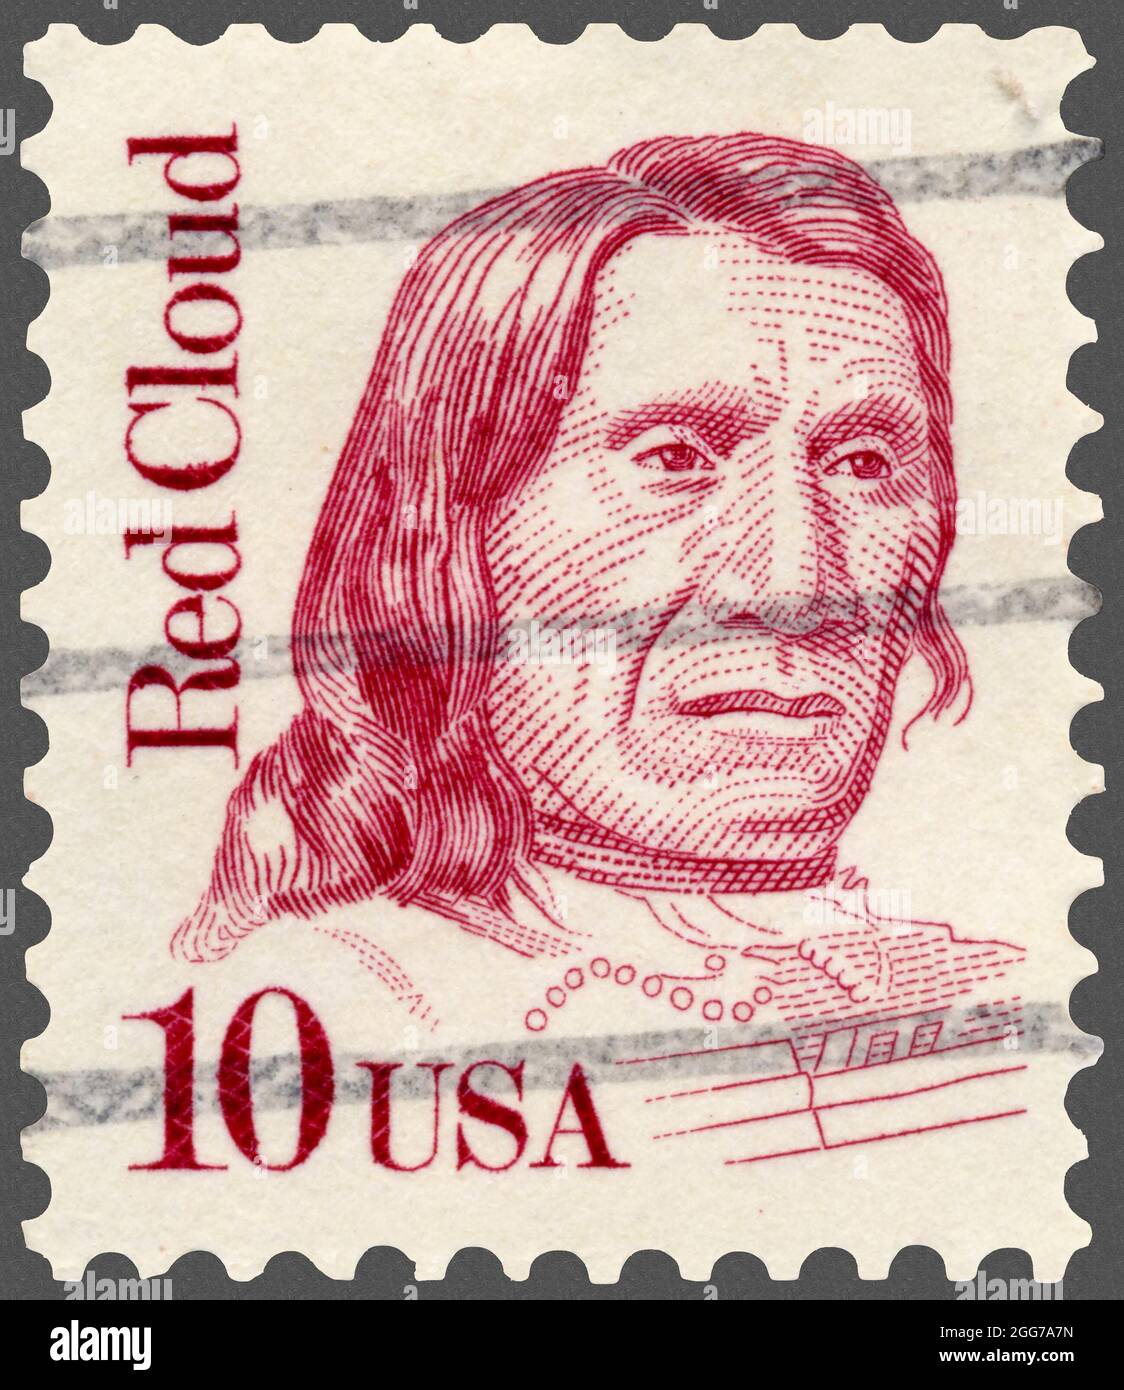 Oglala Lakota Indian Warrior Red Cloud représenté sur 1987 timbre-poste partie de la série des Grands Américains. Banque D'Images